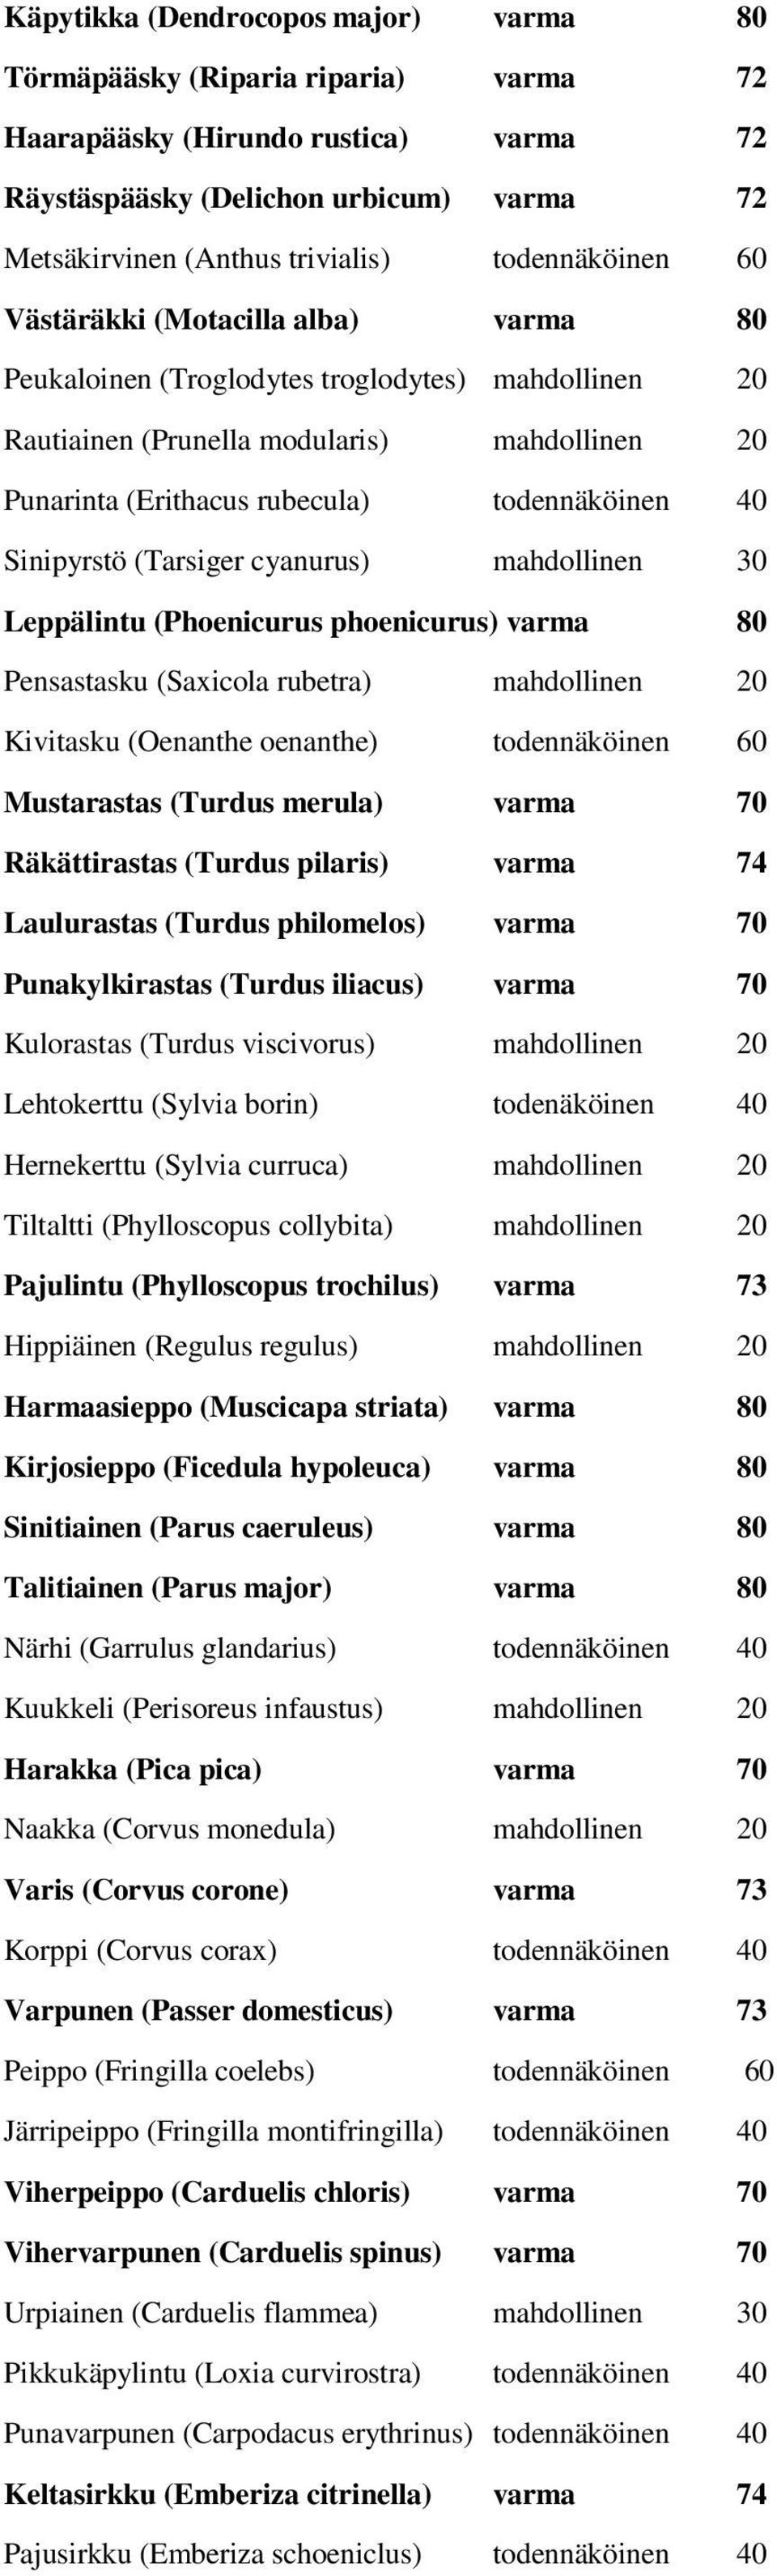 40 Sinipyrstö (Tarsiger cyanurus) mahdollinen 30 Leppälintu (Phoenicurus phoenicurus) varma 80 Pensastasku (Saxicola rubetra) mahdollinen 20 Kivitasku (Oenanthe oenanthe) todennäköinen 60 Mustarastas